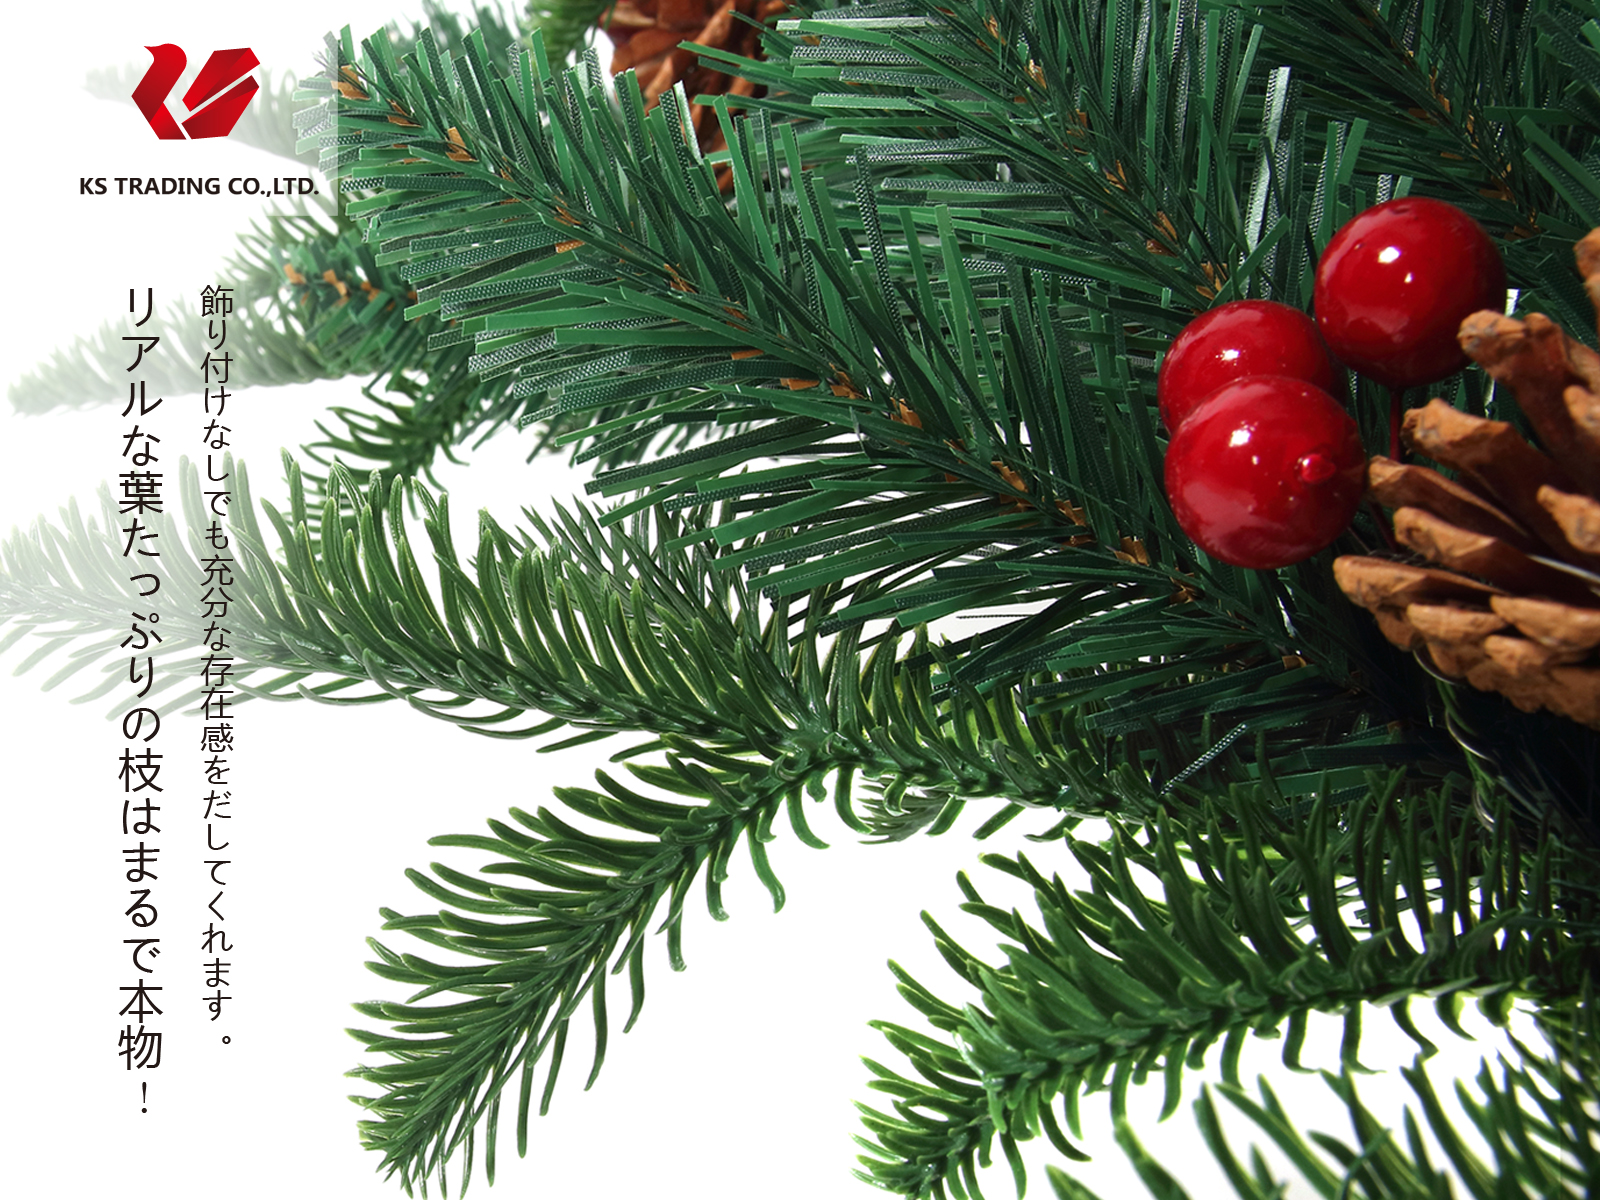 品数豊富 クリスマスツリー 枝大幅増量タイプ 松ぼっくり付き 赤い実付き おしゃれな クリスマスツリー 180cm Ksbm 置物 オーナメント Indonesiadevelopmentforum Com